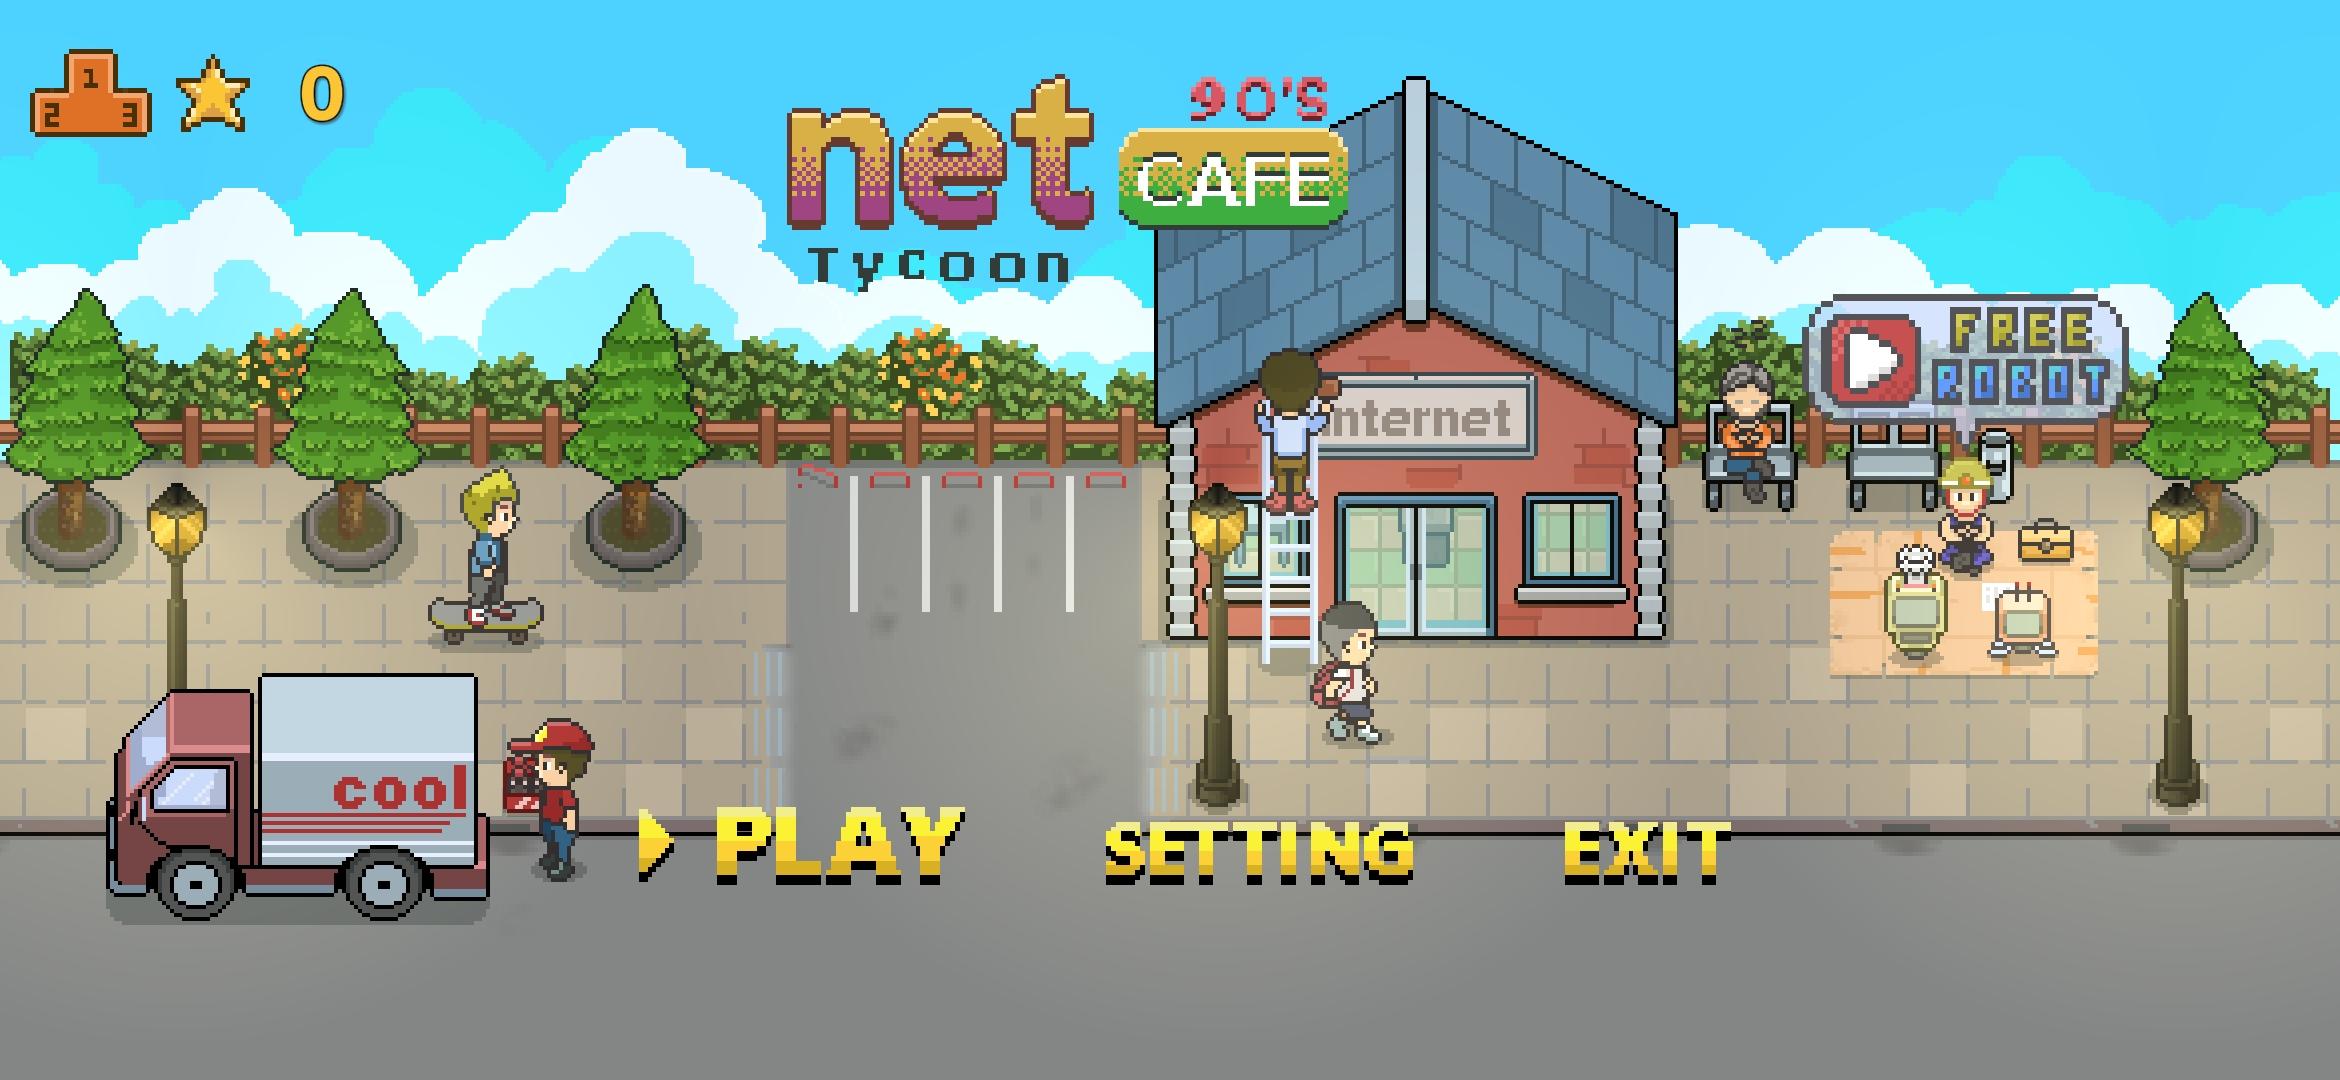 Screenshot 1 of Magnate de NetCafé 1.0.5.9